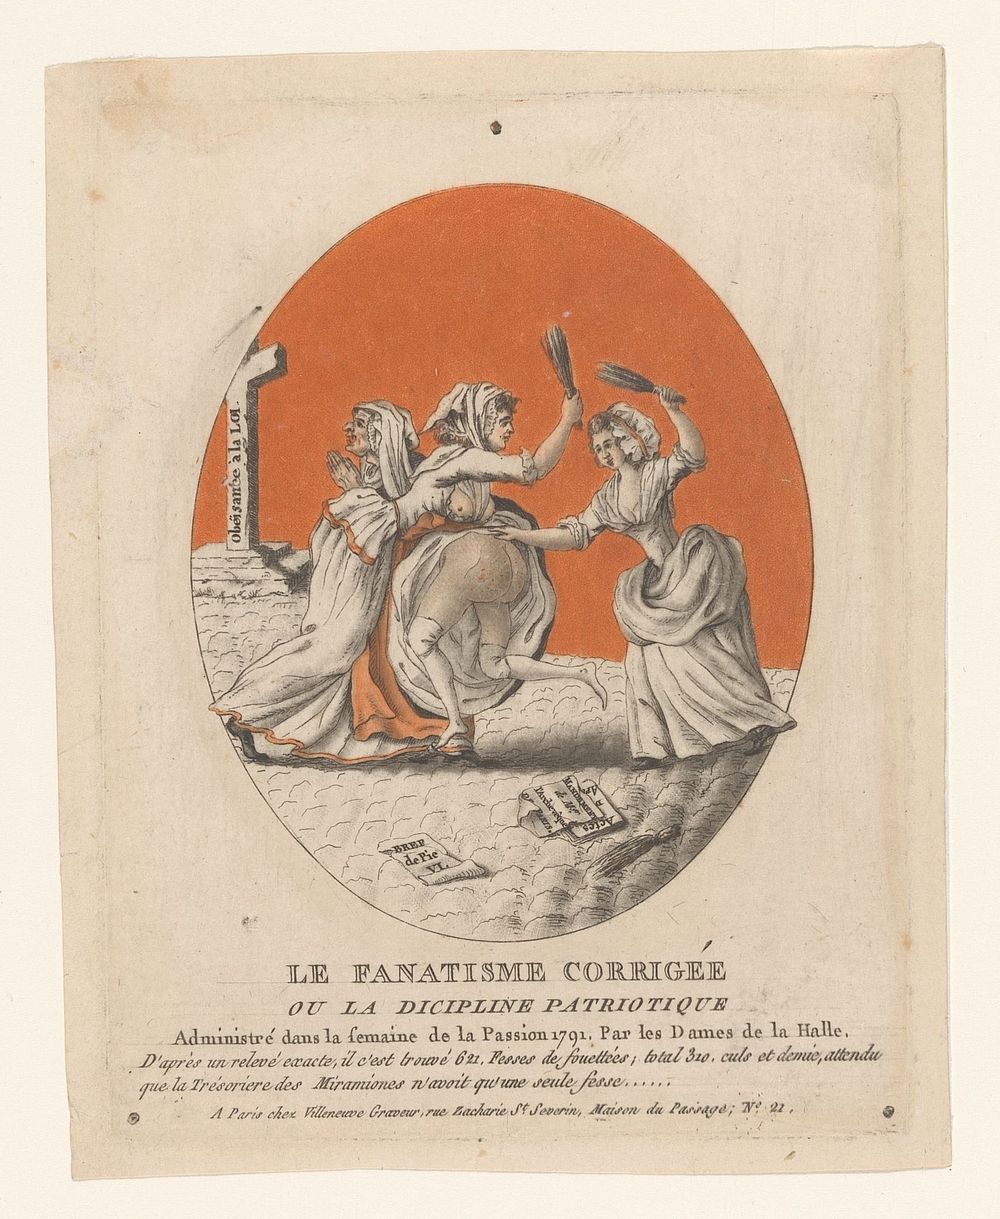 Het fanatisme gecorrigeerd, 1791 (1791) by Villeneuve and Villeneuve